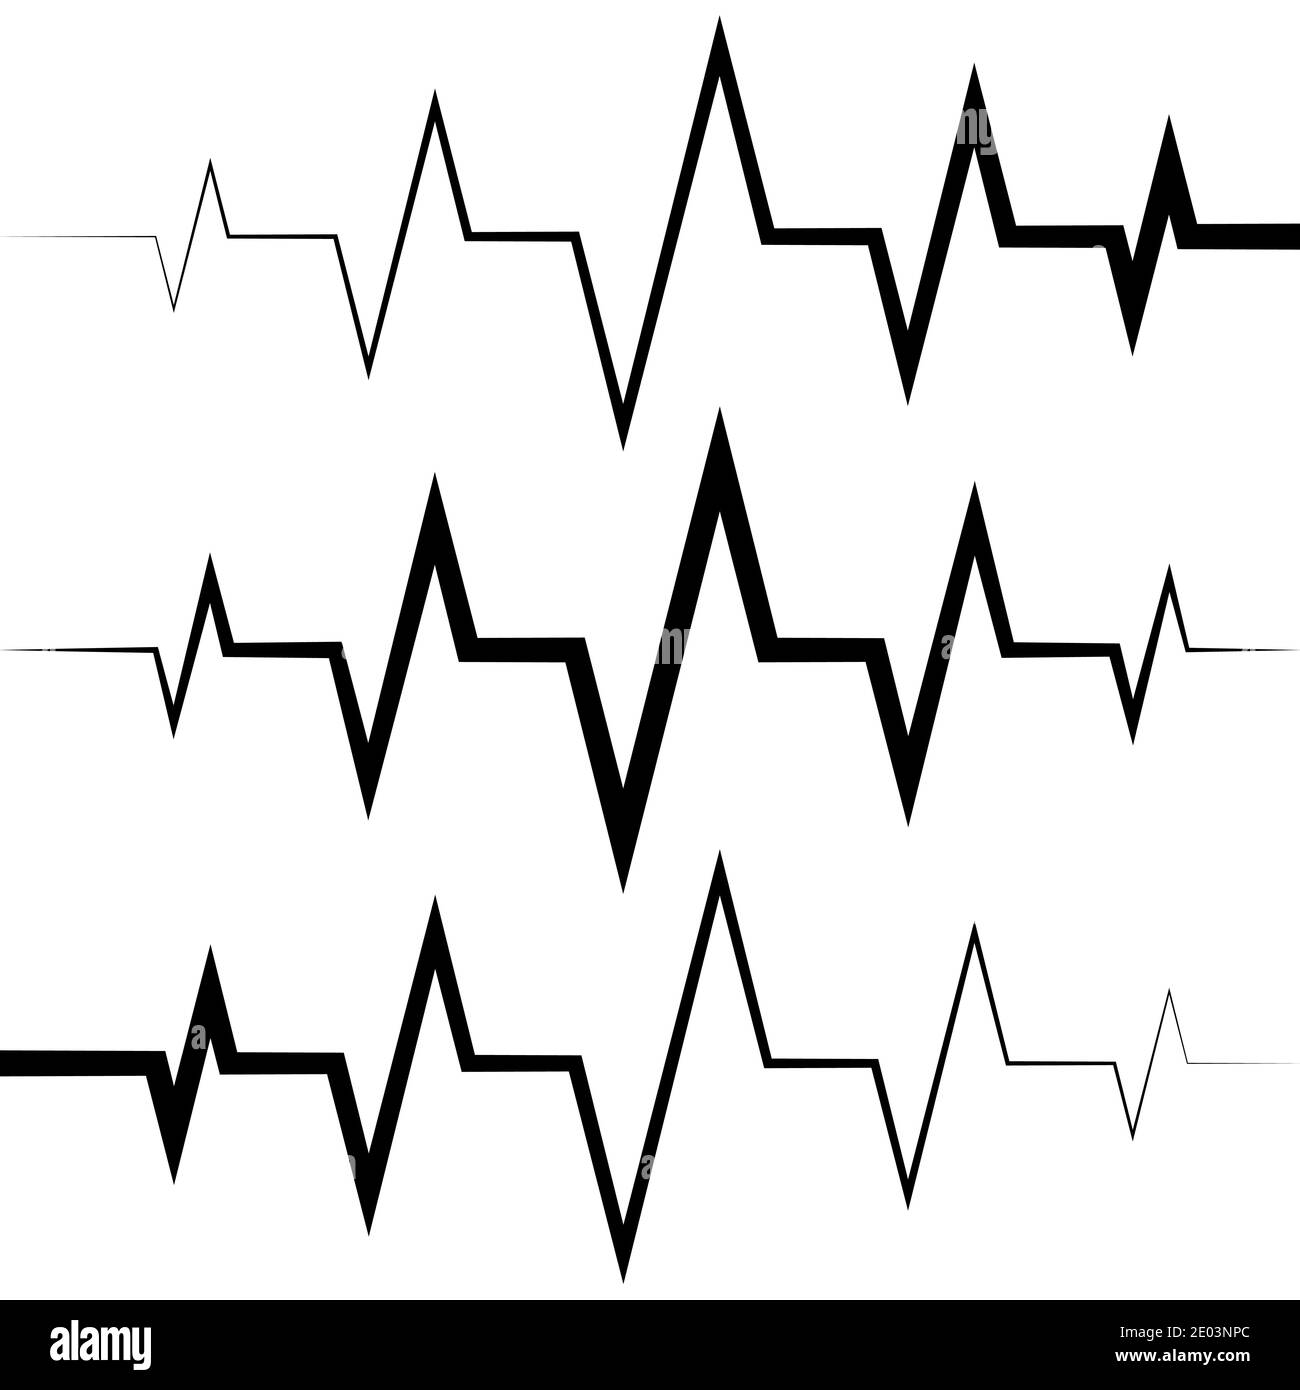 icona dell'onda sinusoidale icona della frequenza cardiaca icona del polso logo della medicina, icona della frequenza cardiaca del battito cardiaco del vettore, suono audio picchi di ampiezza dell'onda radio Illustrazione Vettoriale